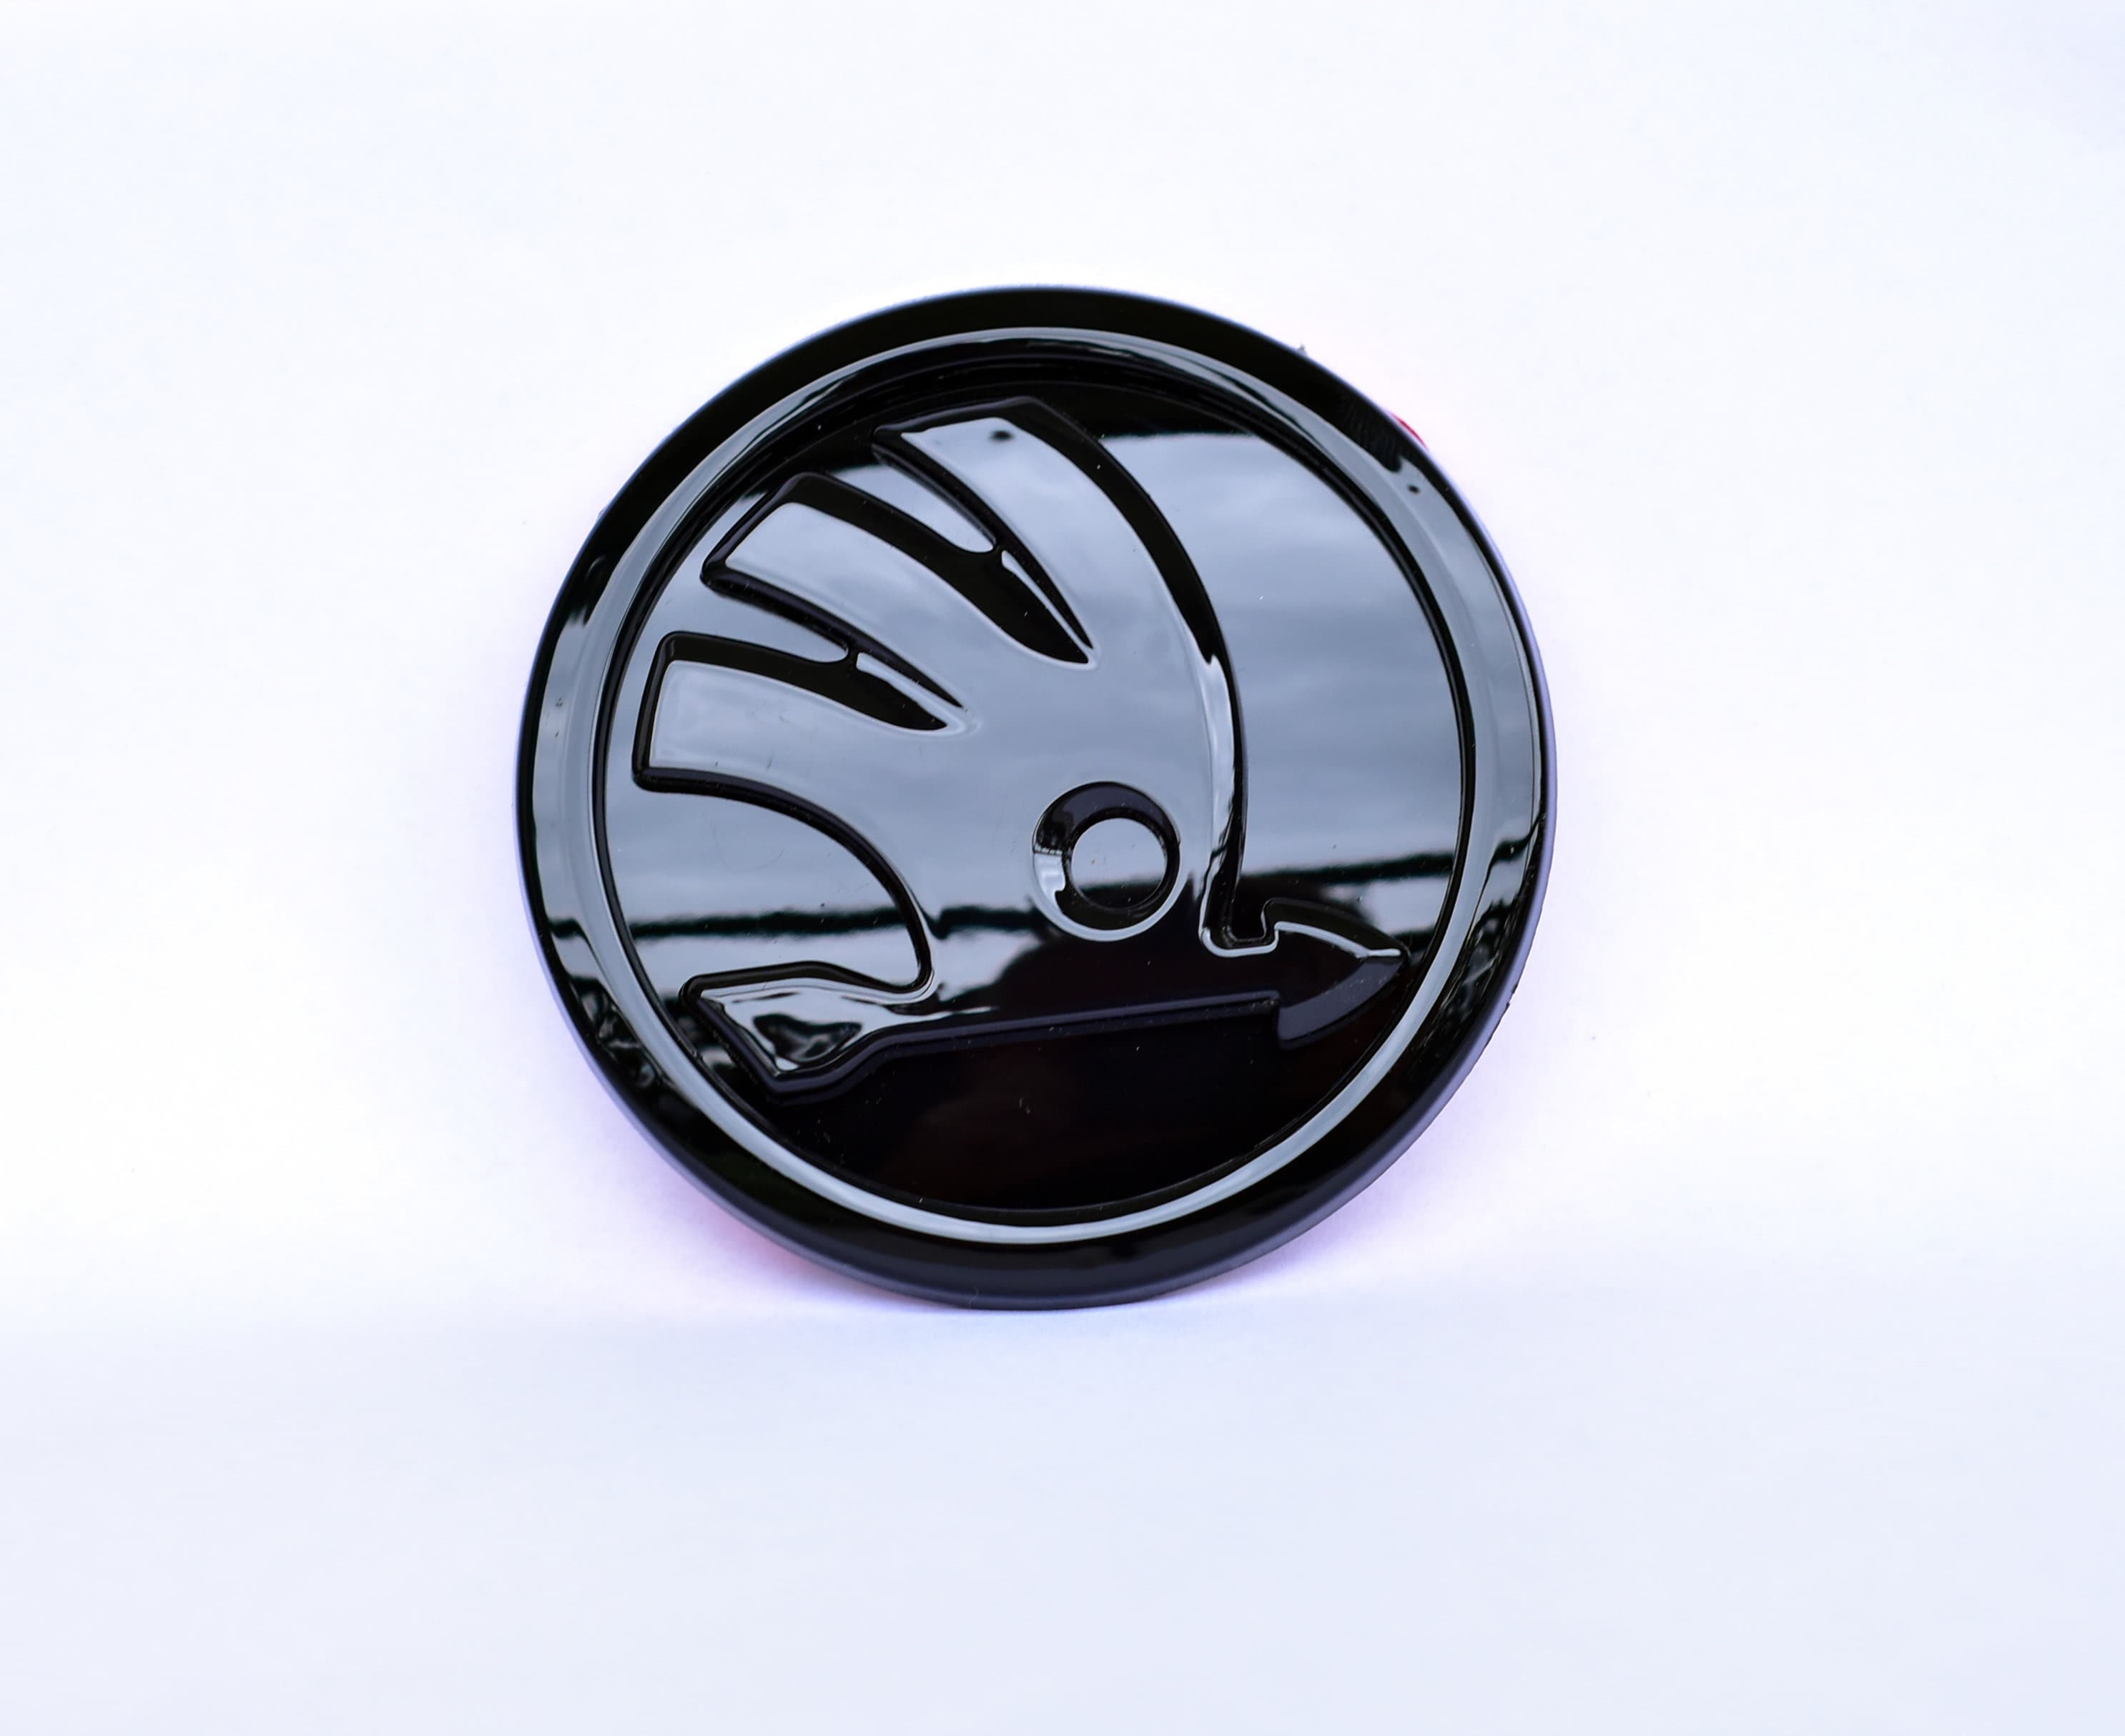 Black Shine Emblem Badge 80 or 90 Mm for the Bonnet, Trunk for Skoda Rapid,  Superb, Kodiaq, Octavia -  Ireland